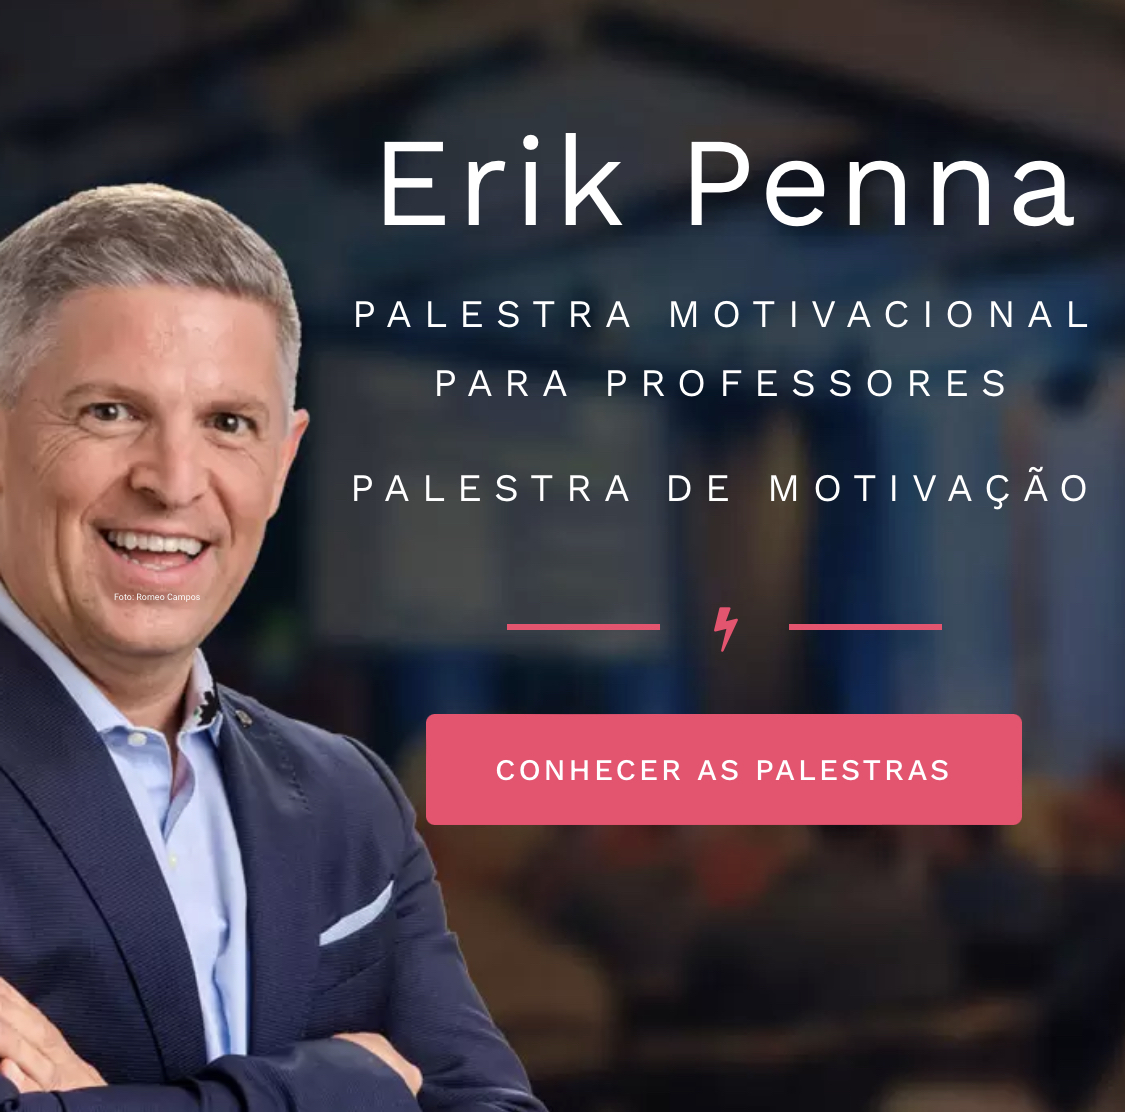 (c) Professorerikpenna.com.br